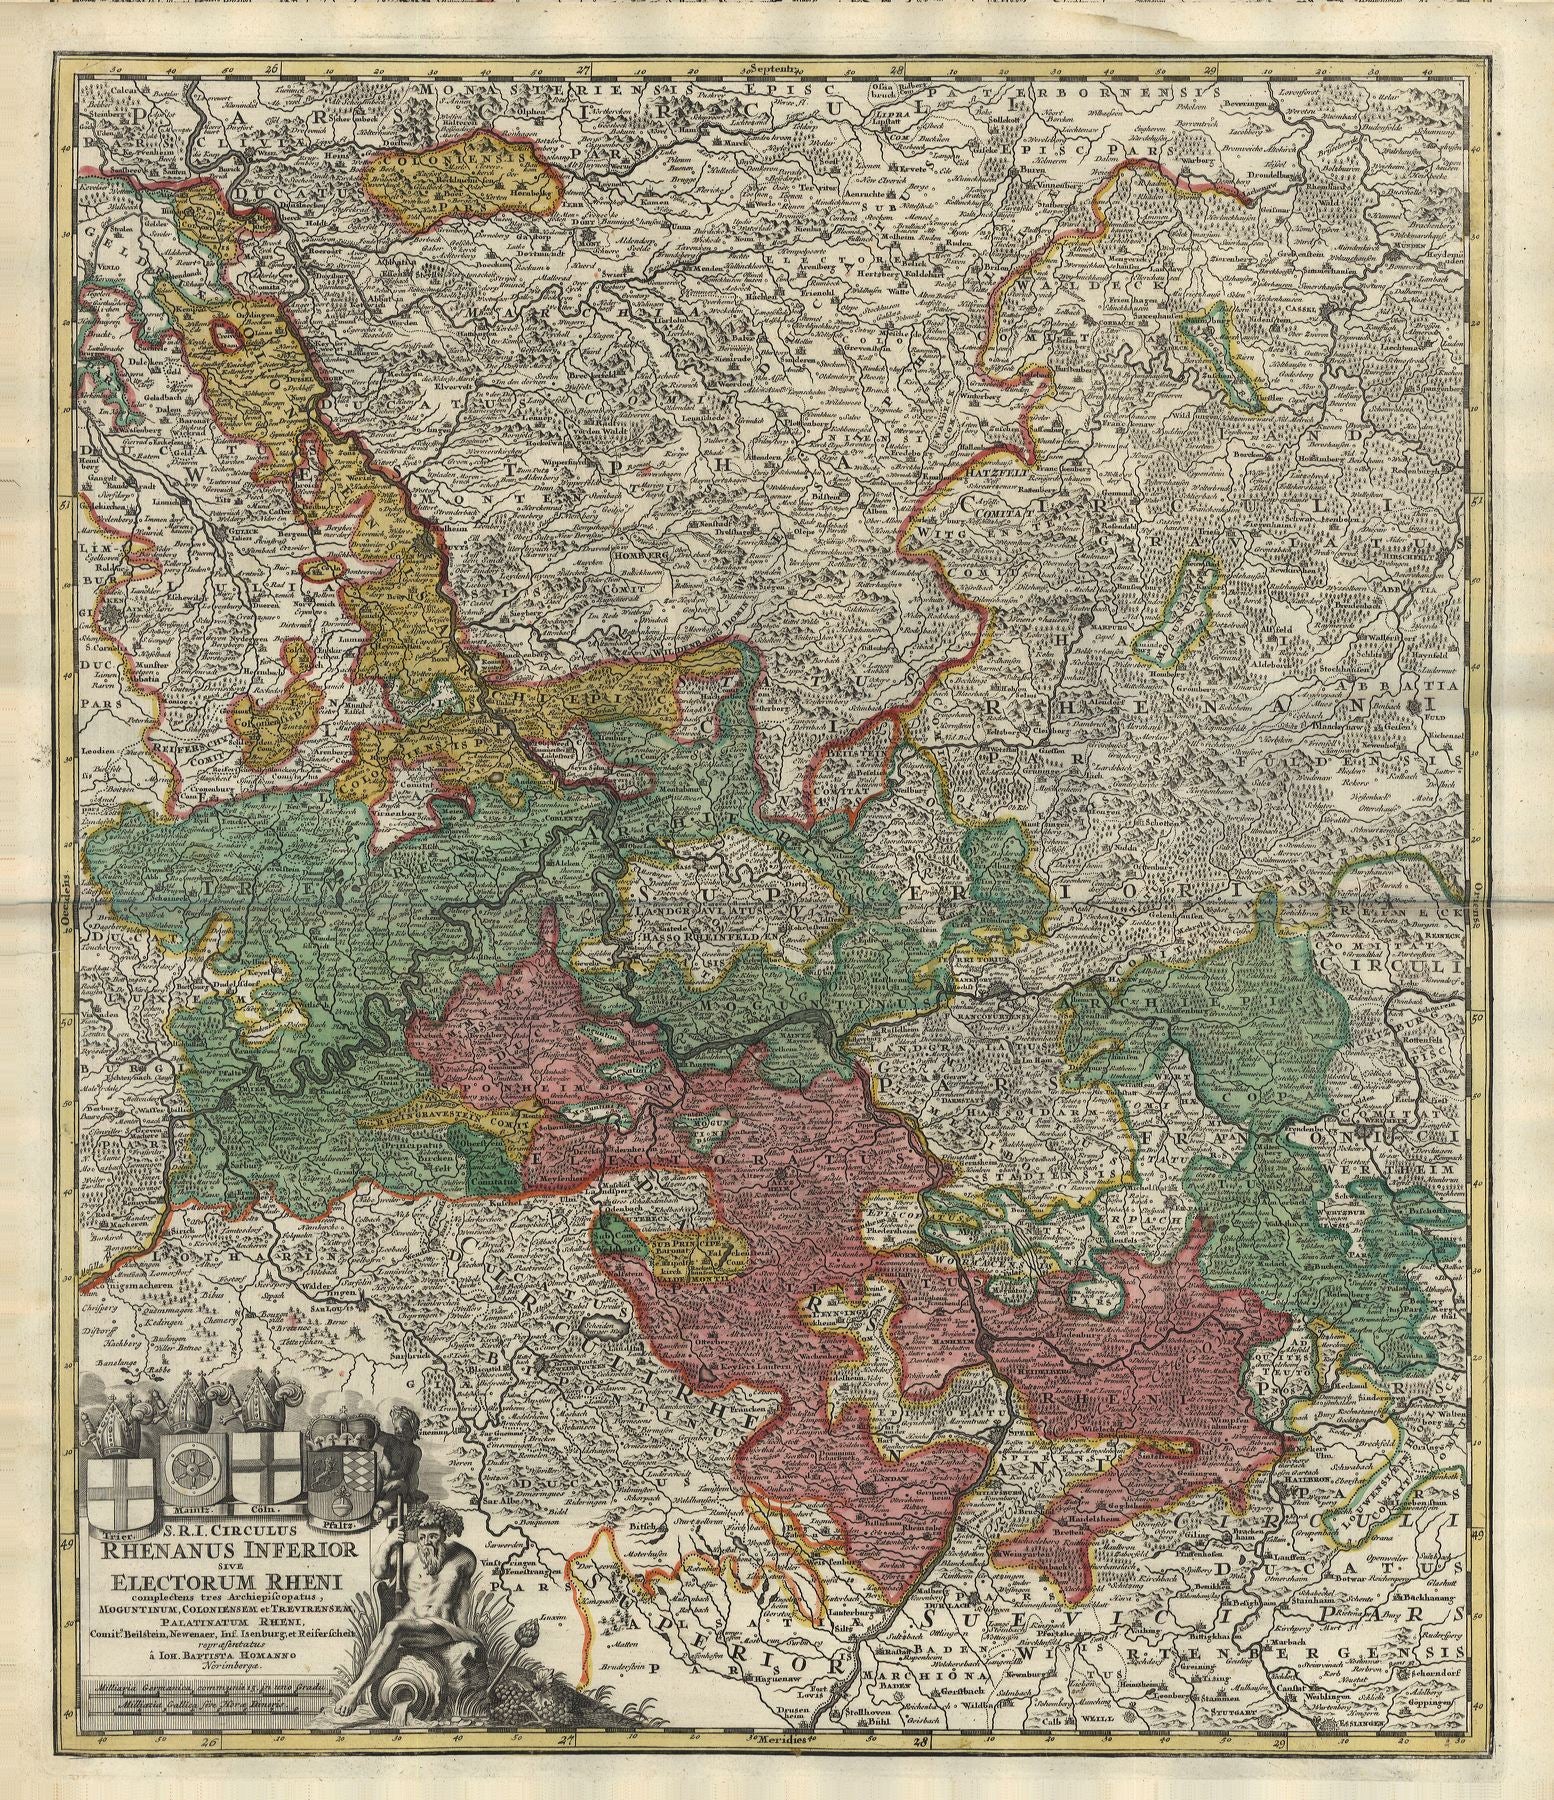 Deutschland / Rhein im Jahr 1716 von Johann Baptist Homann